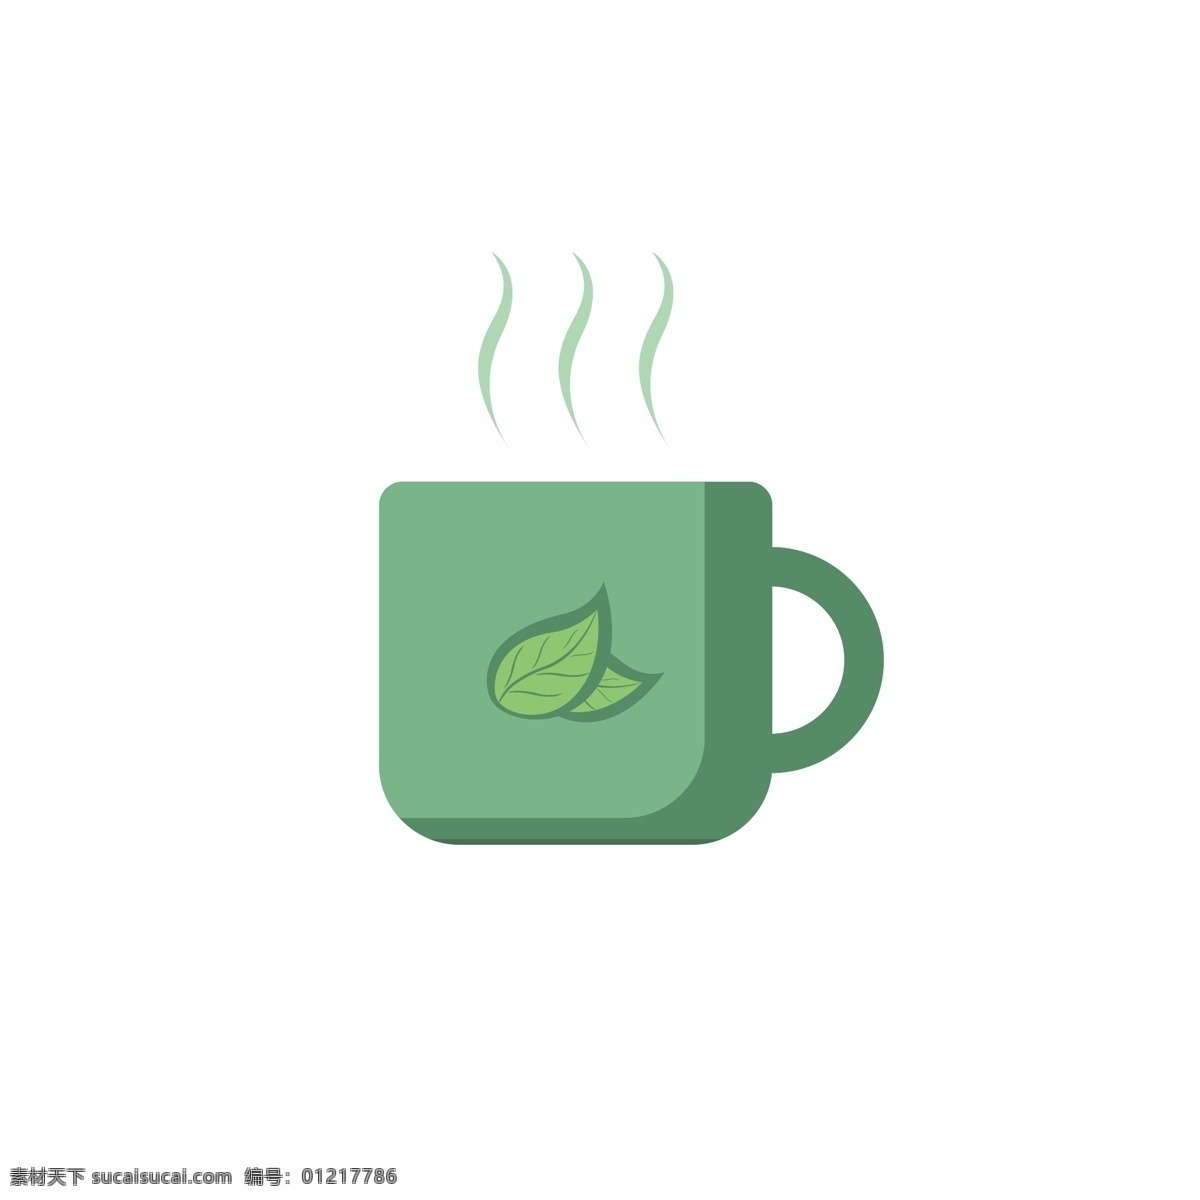 原创 抹 茶 绿 咖啡杯 绿色 水杯 卡通 抹茶绿 卡通杯